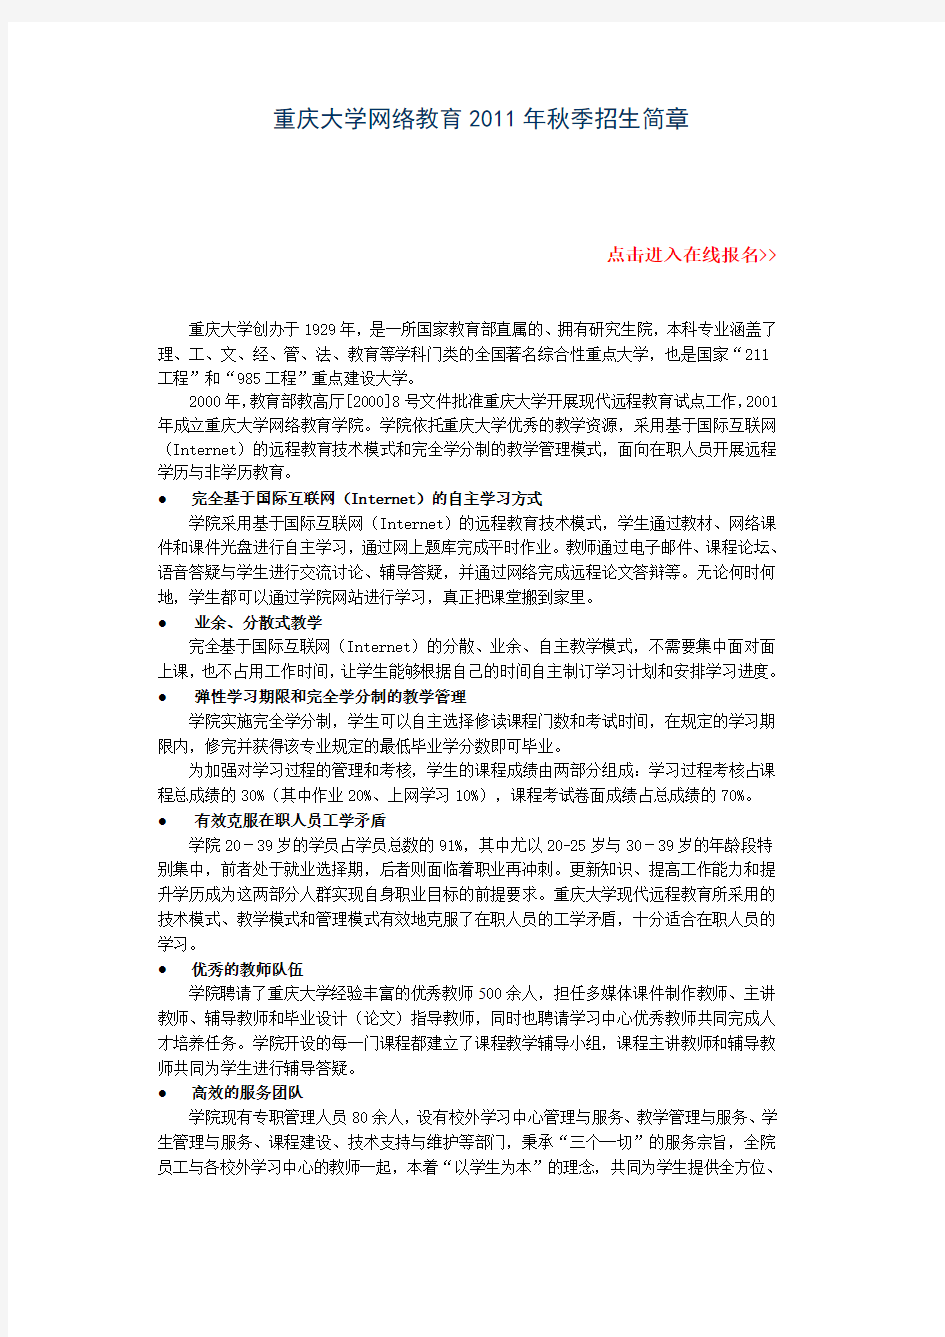 重庆大学网络教育2012年秋季招生简章